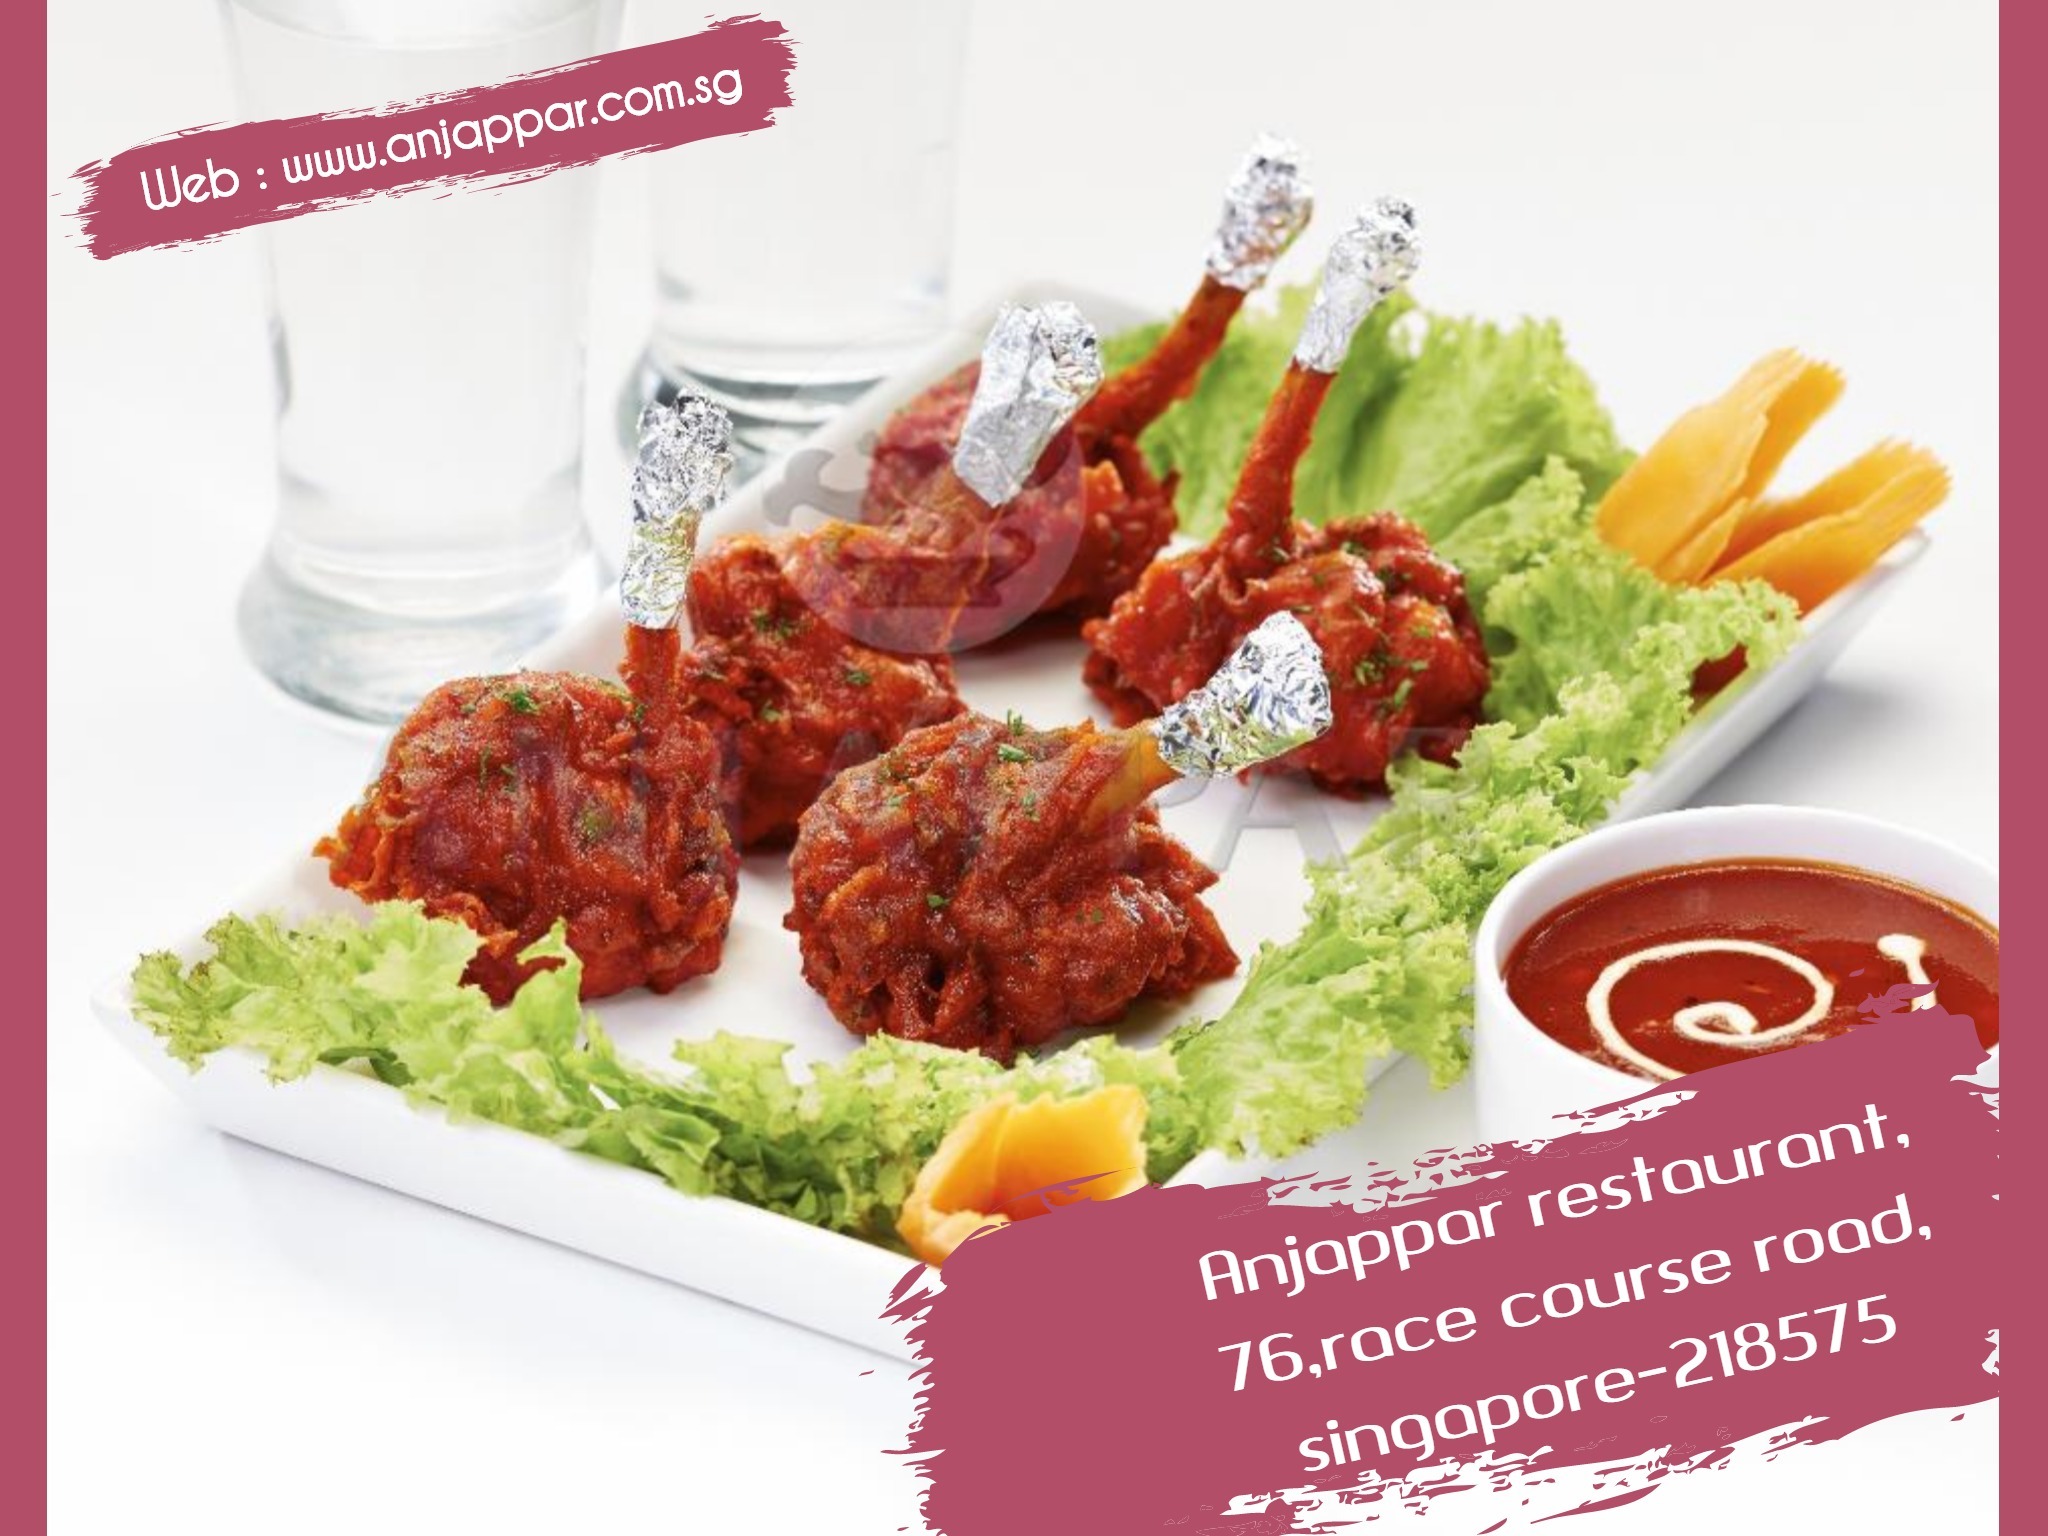 singapore best restaurants best singapore restaurants best dining in